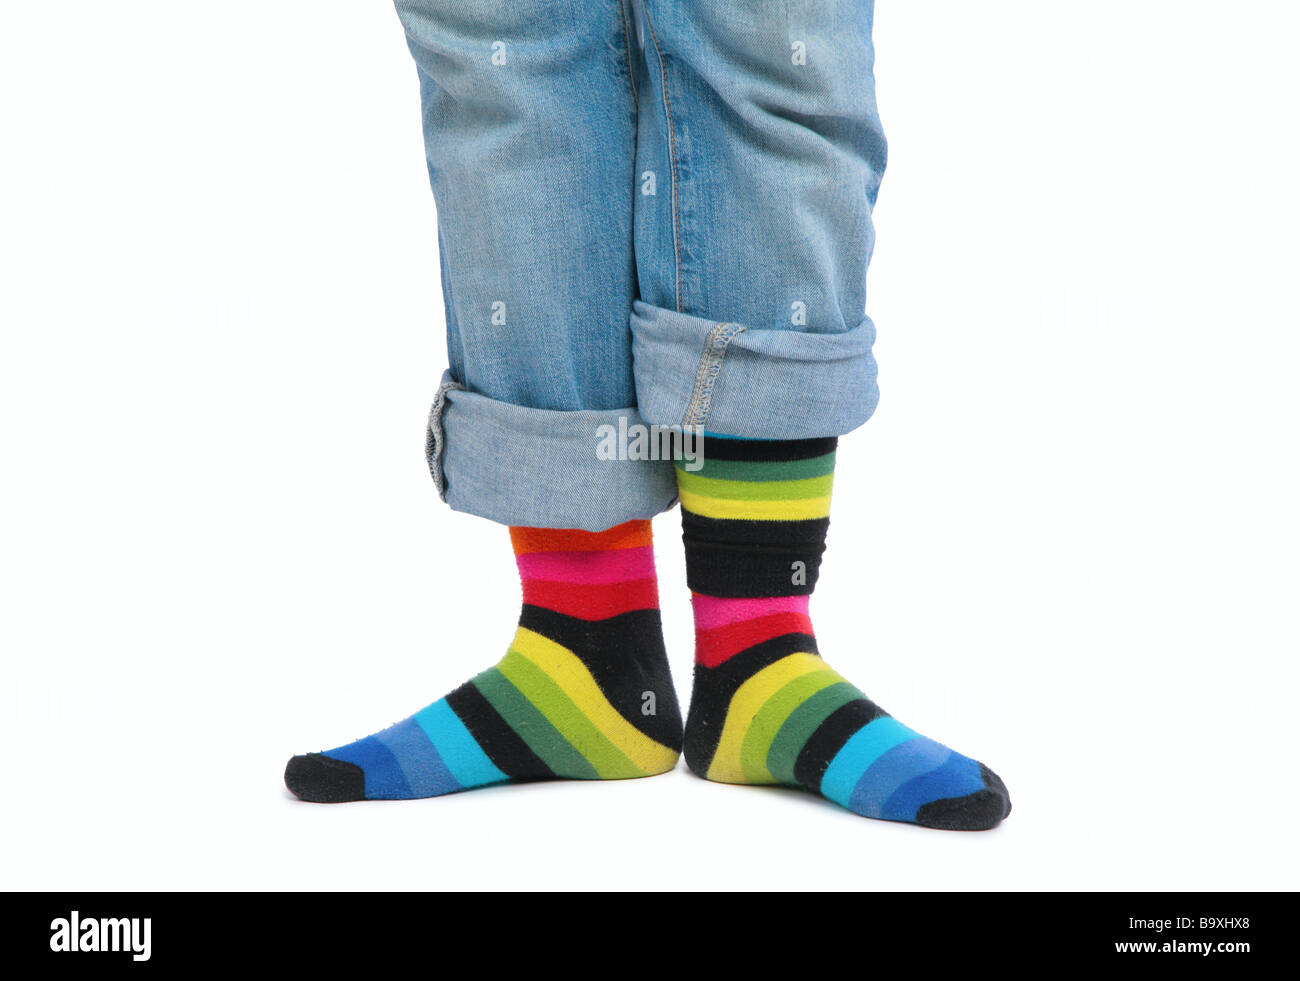 Deux pieds en chaussettes multi-couleur Banque D'Images